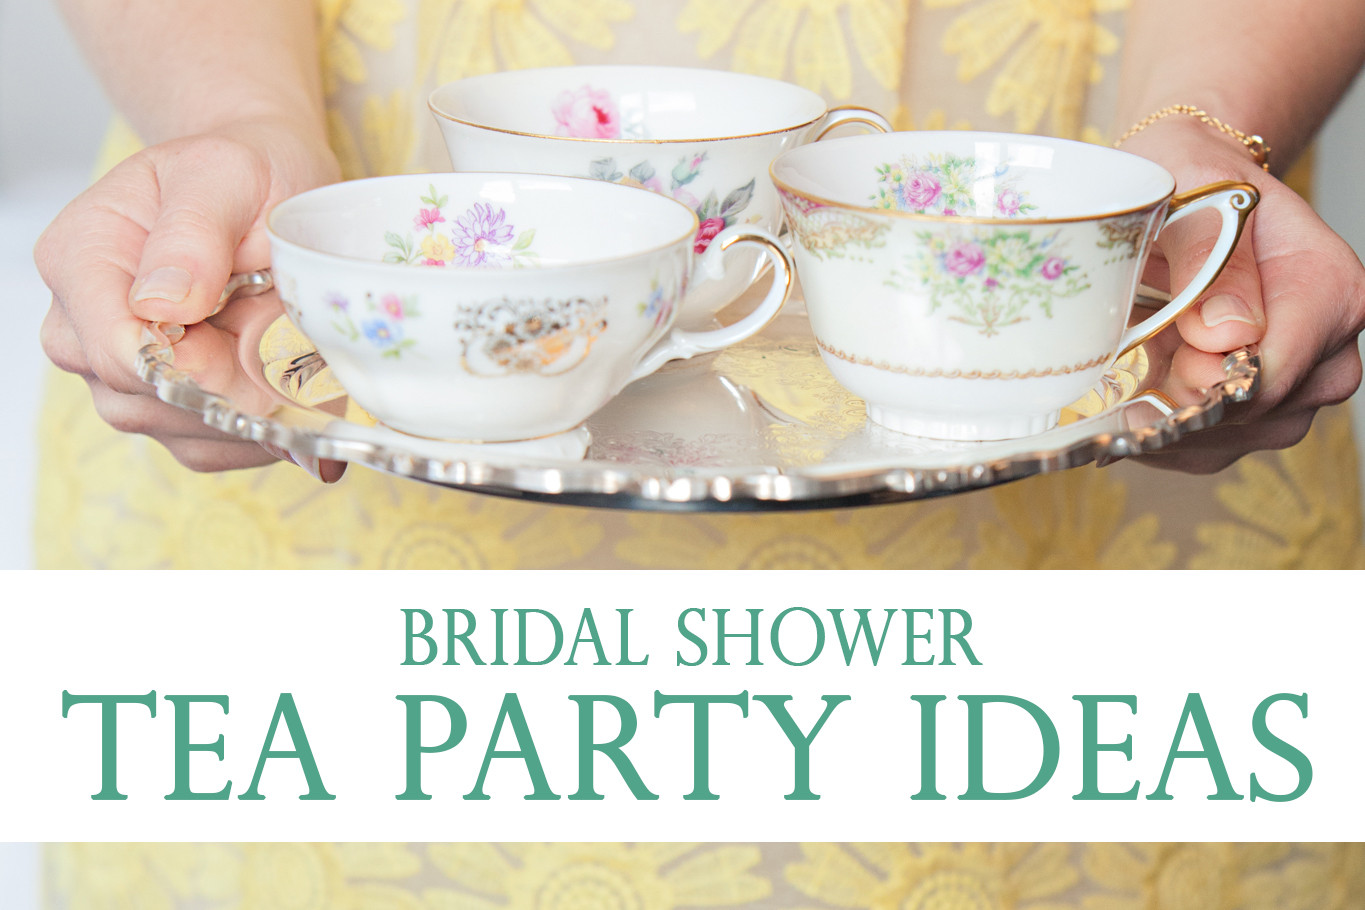 Bridal Shower Tea Party Ideas
 Bridal Shower Tea Party Ideas